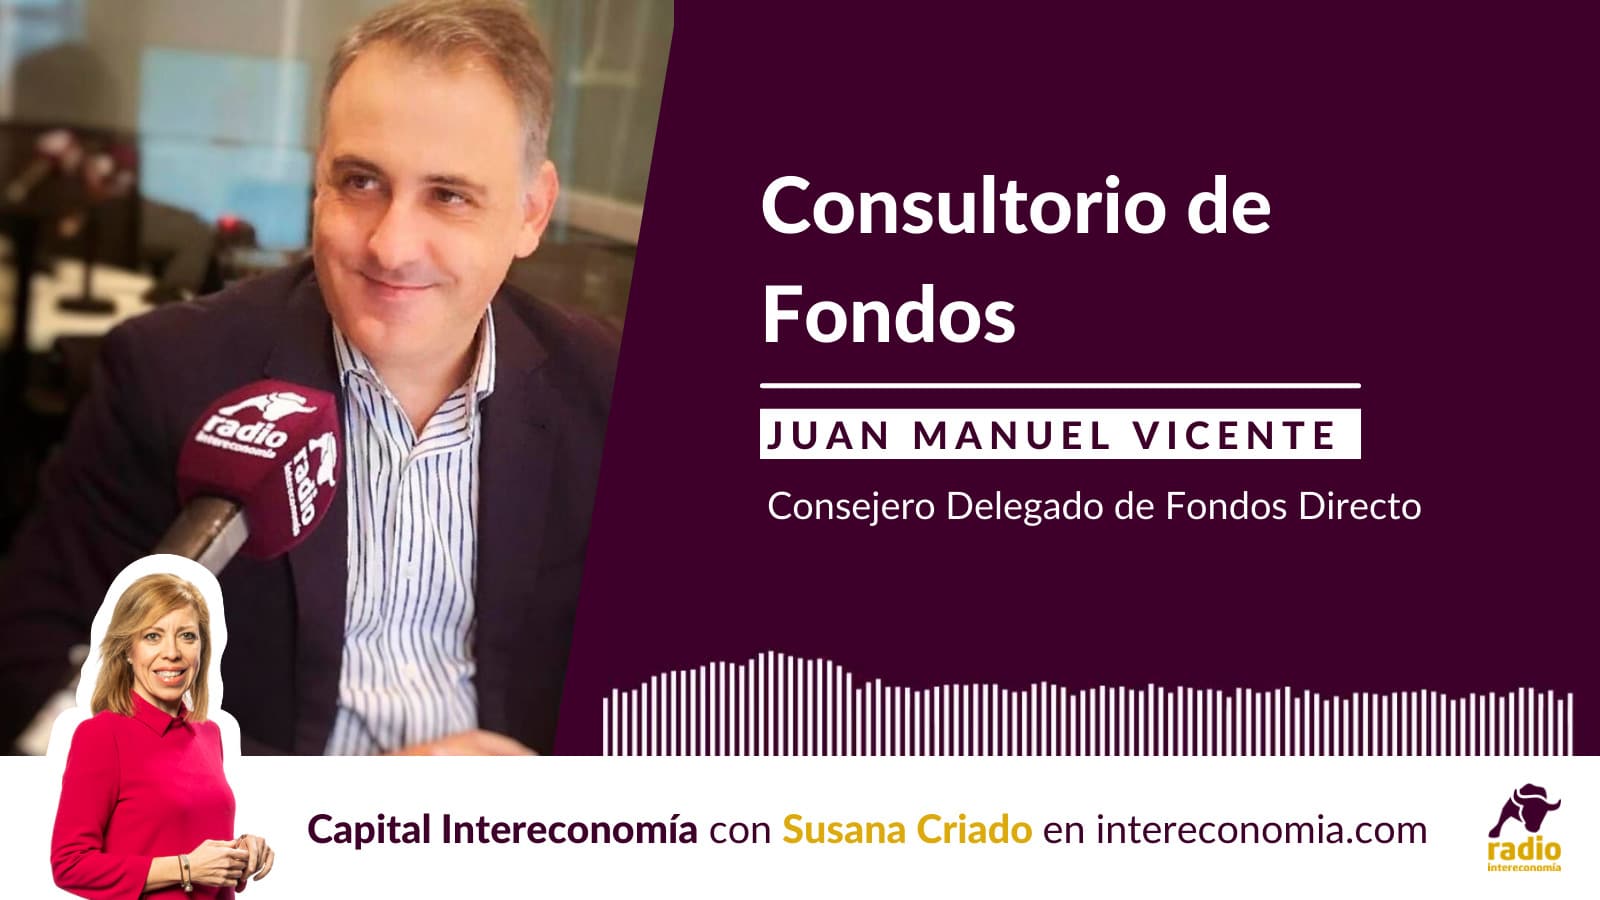 Consultorio de Fondos con Juan Manuel Vicente (Fondos Directo) 14/04/2021